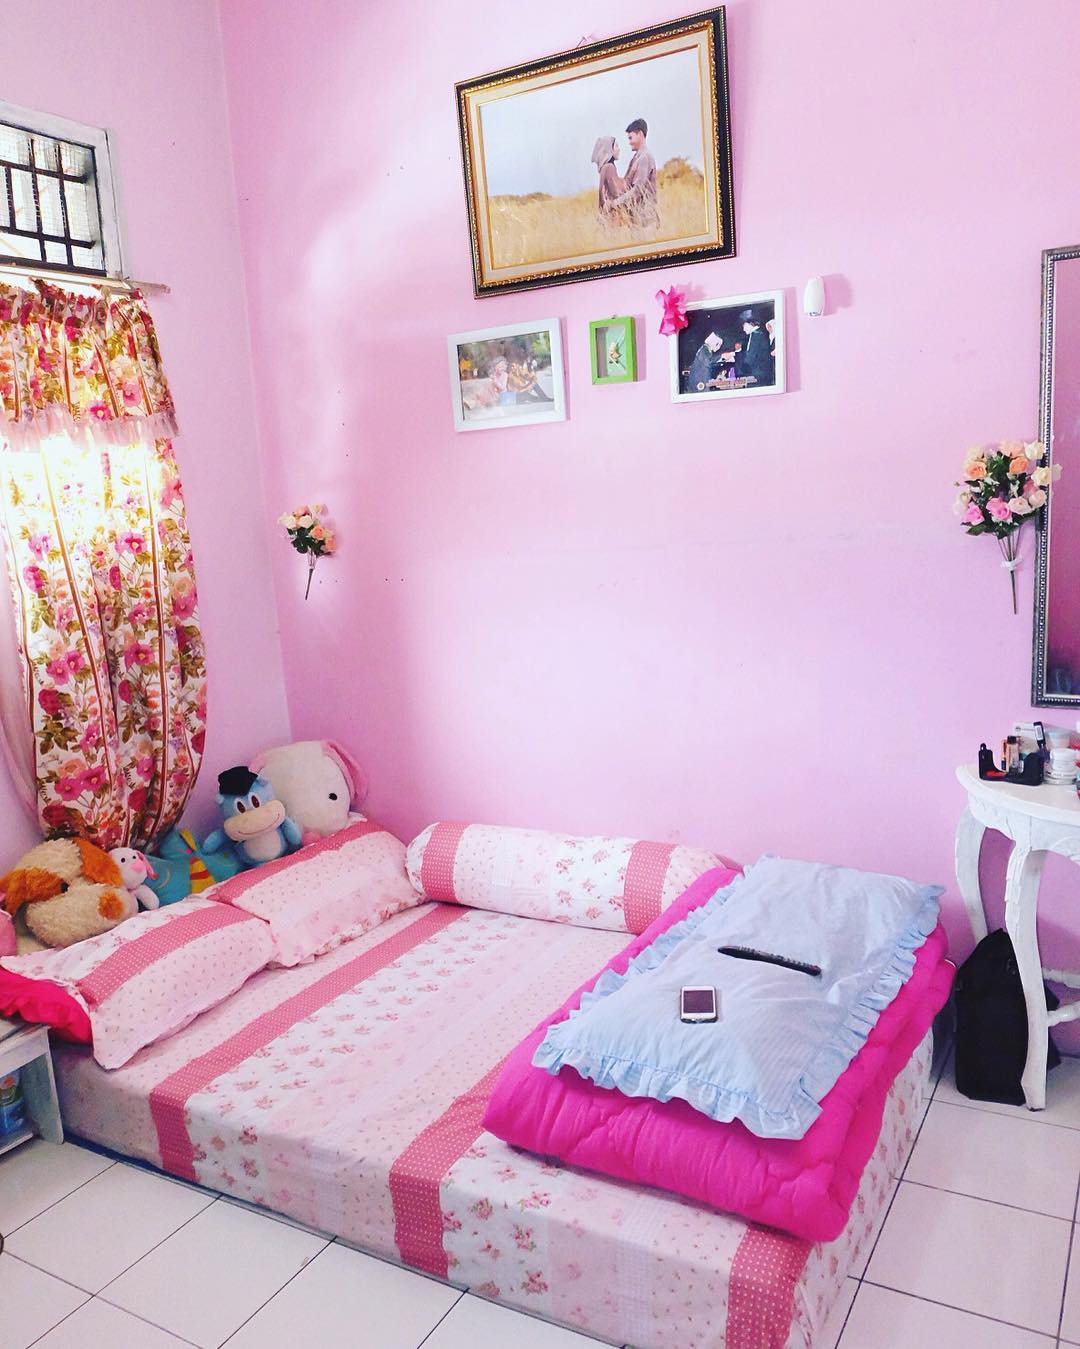 壁紙dinding kamar tidur romantis,寝室,ベッドシーツ,家具,ピンク,ルーム